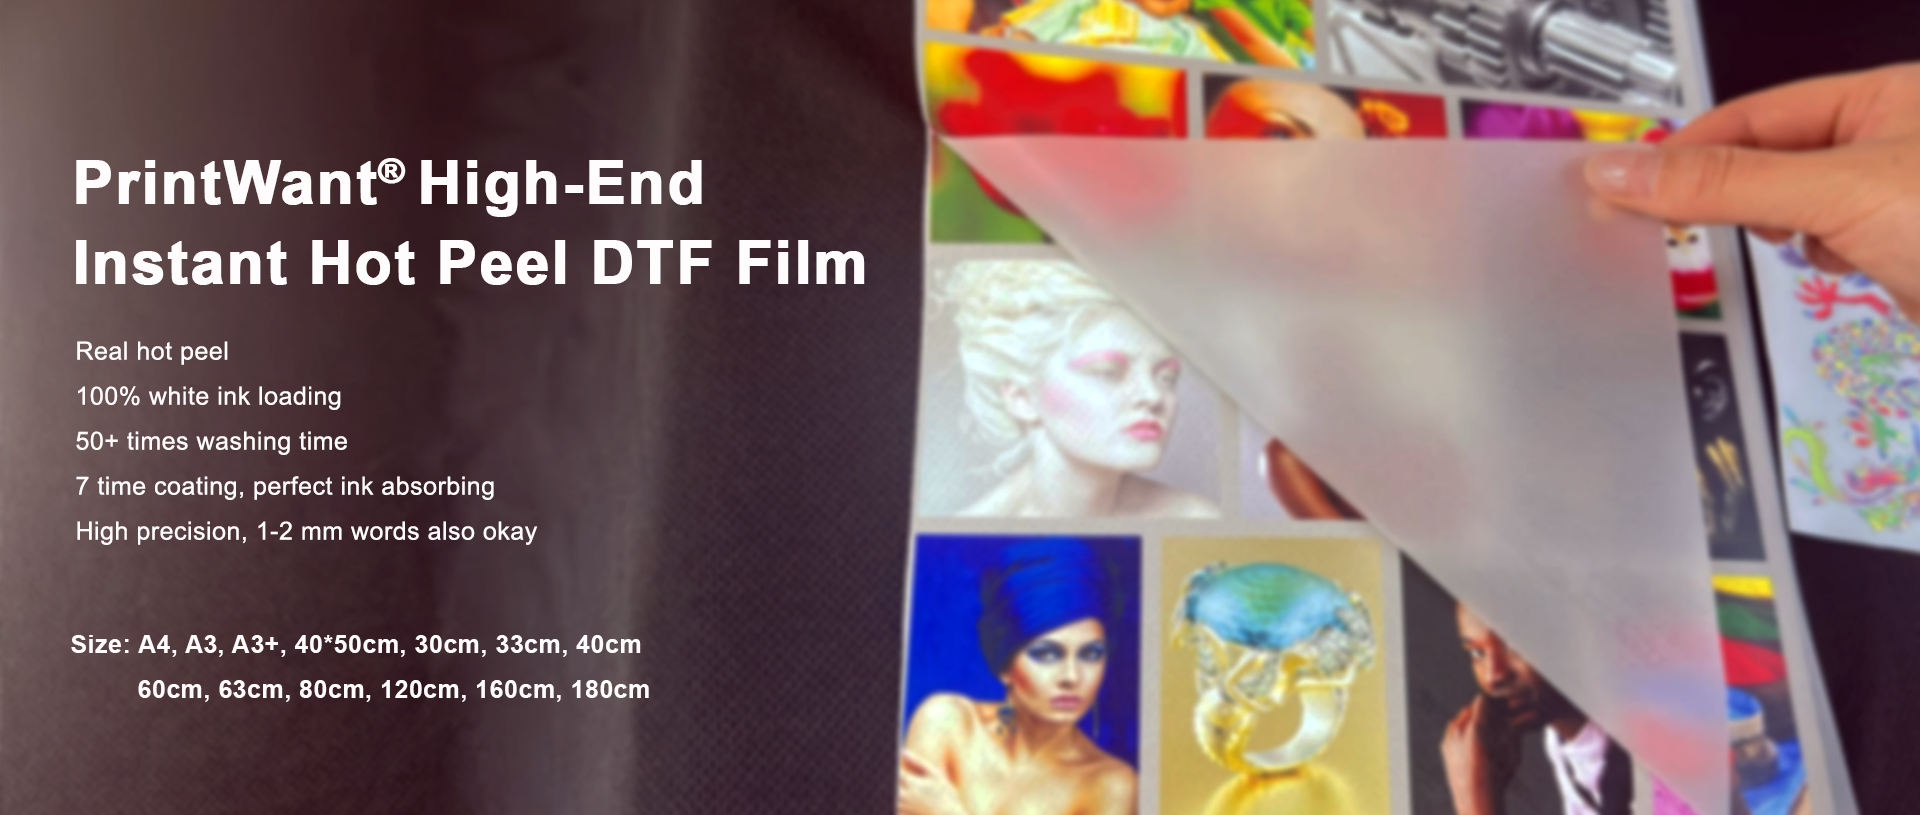 Filme DTF Pet da PrintWant: o modelo da indústria para efeitos perfeitos de Instant Hot Peel